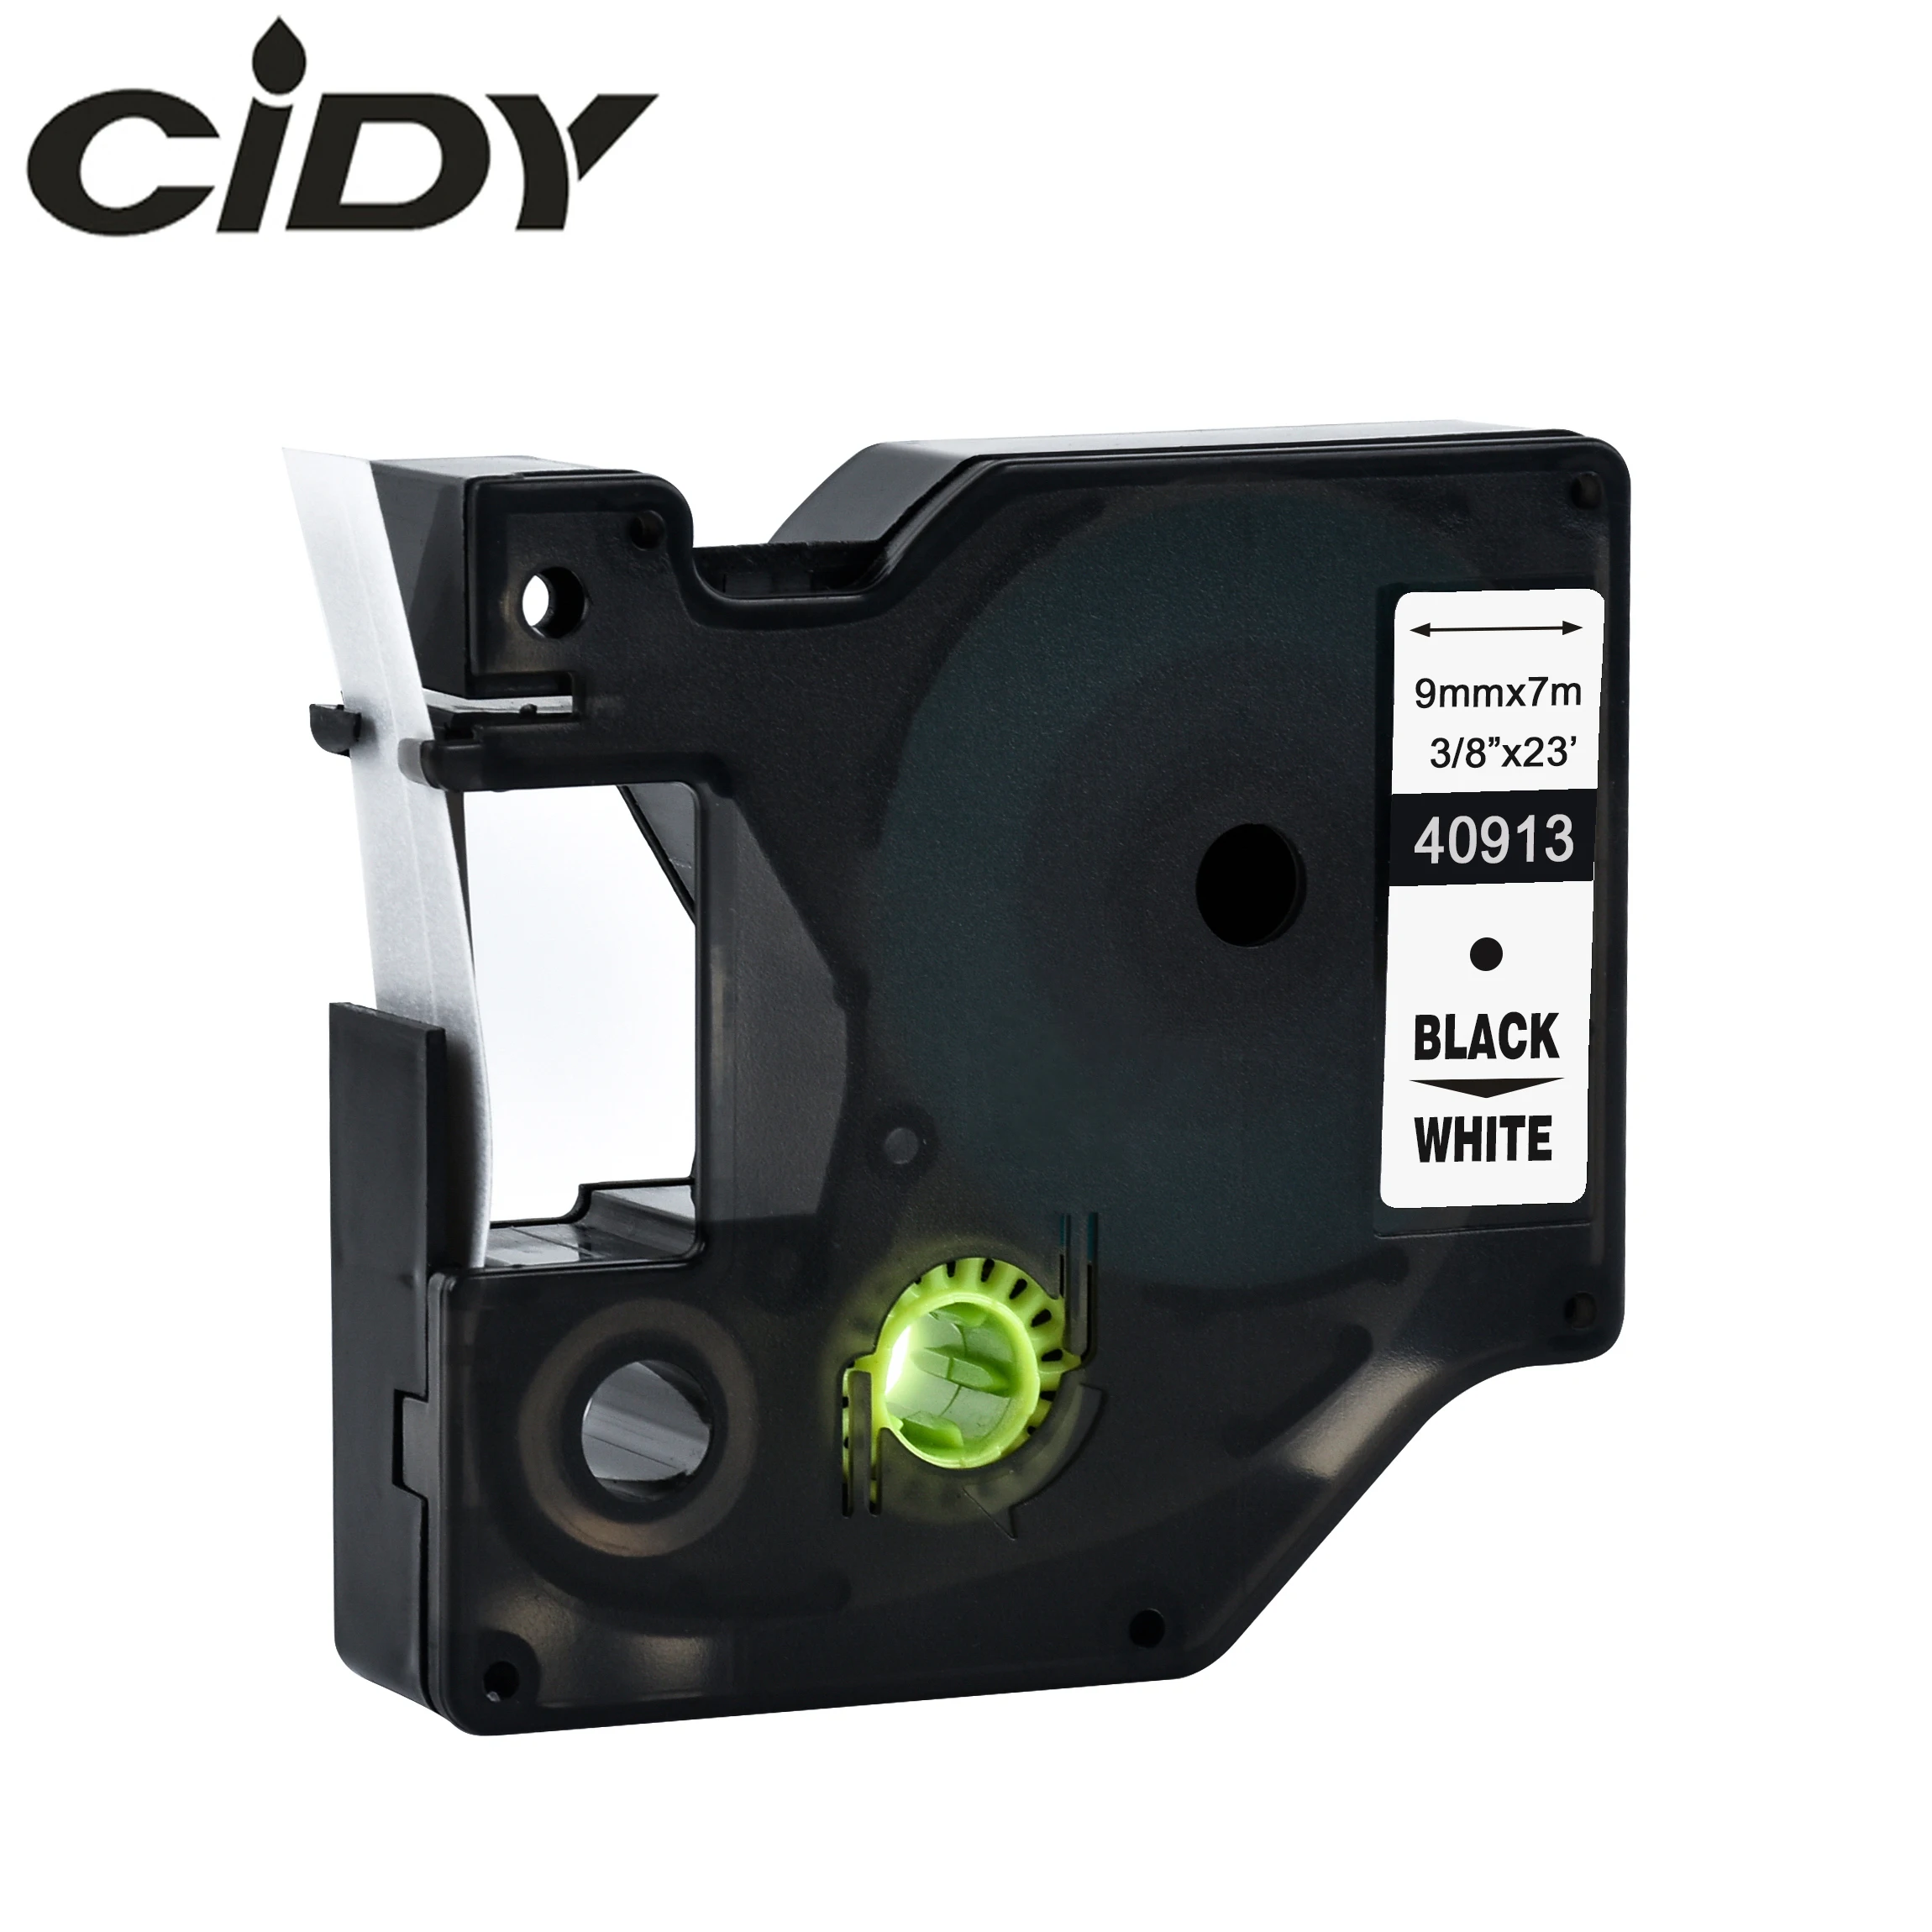 Cidy 5 шт. совместимый с Dymo Labelmanager 9 мм D1 черный на белом Dymo Maker 40913 этикетки Ленточные картриджи поставка с фабрики